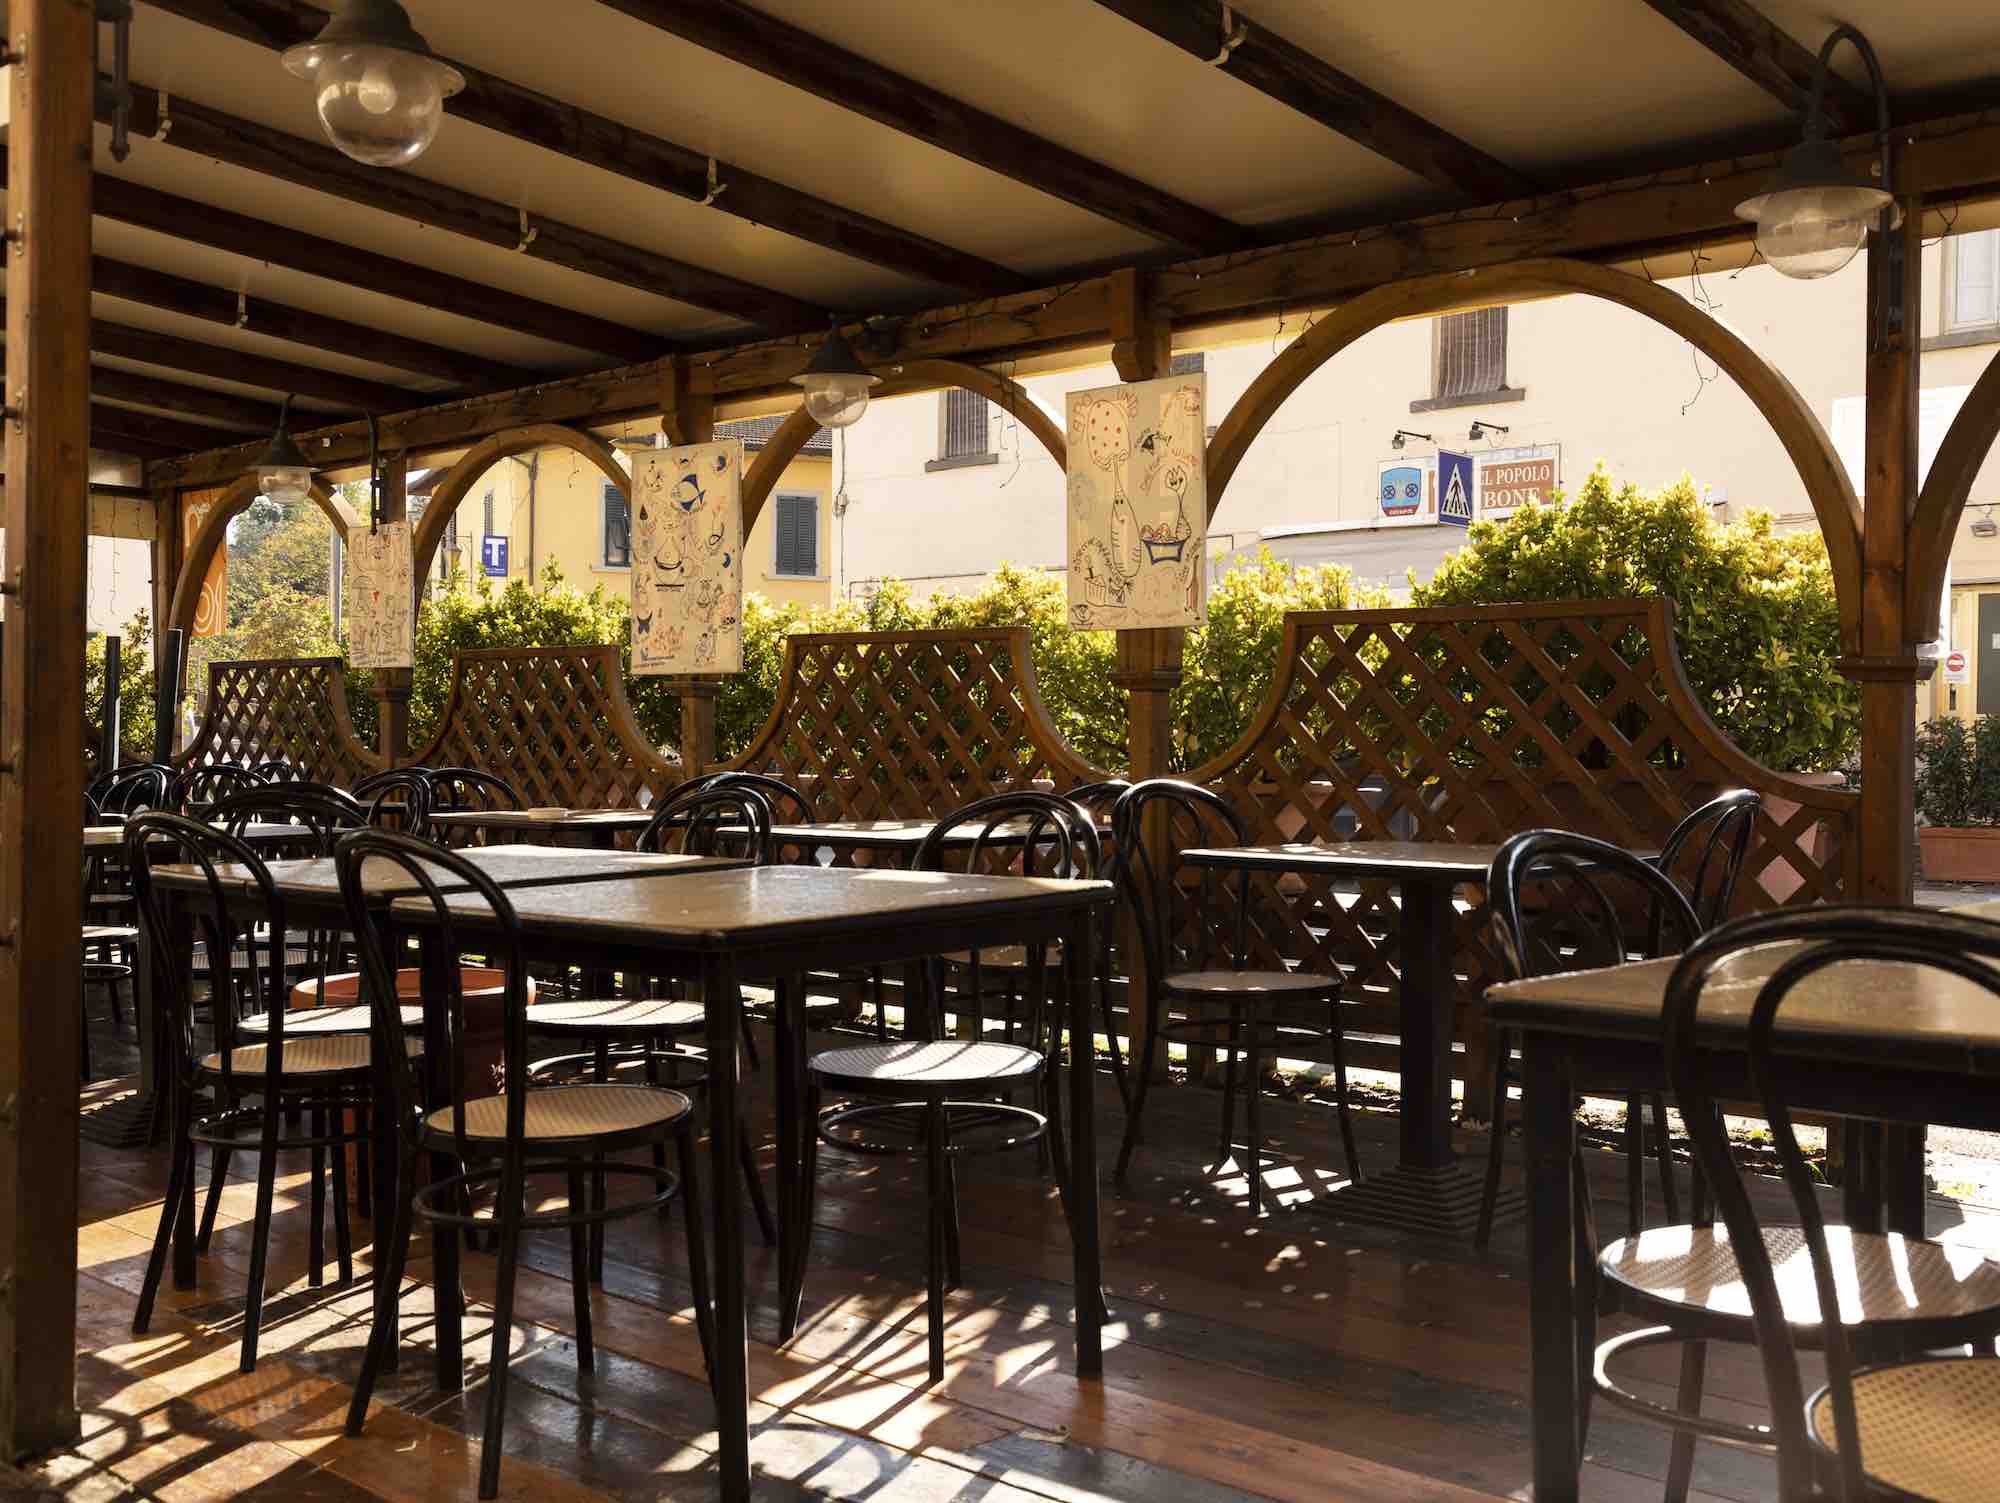 Tavoli all'aperto dell'Osteria Bonanni a Montelupo, uno dei migliori ristoranti di cucina toscana nei dintorni di Firenze